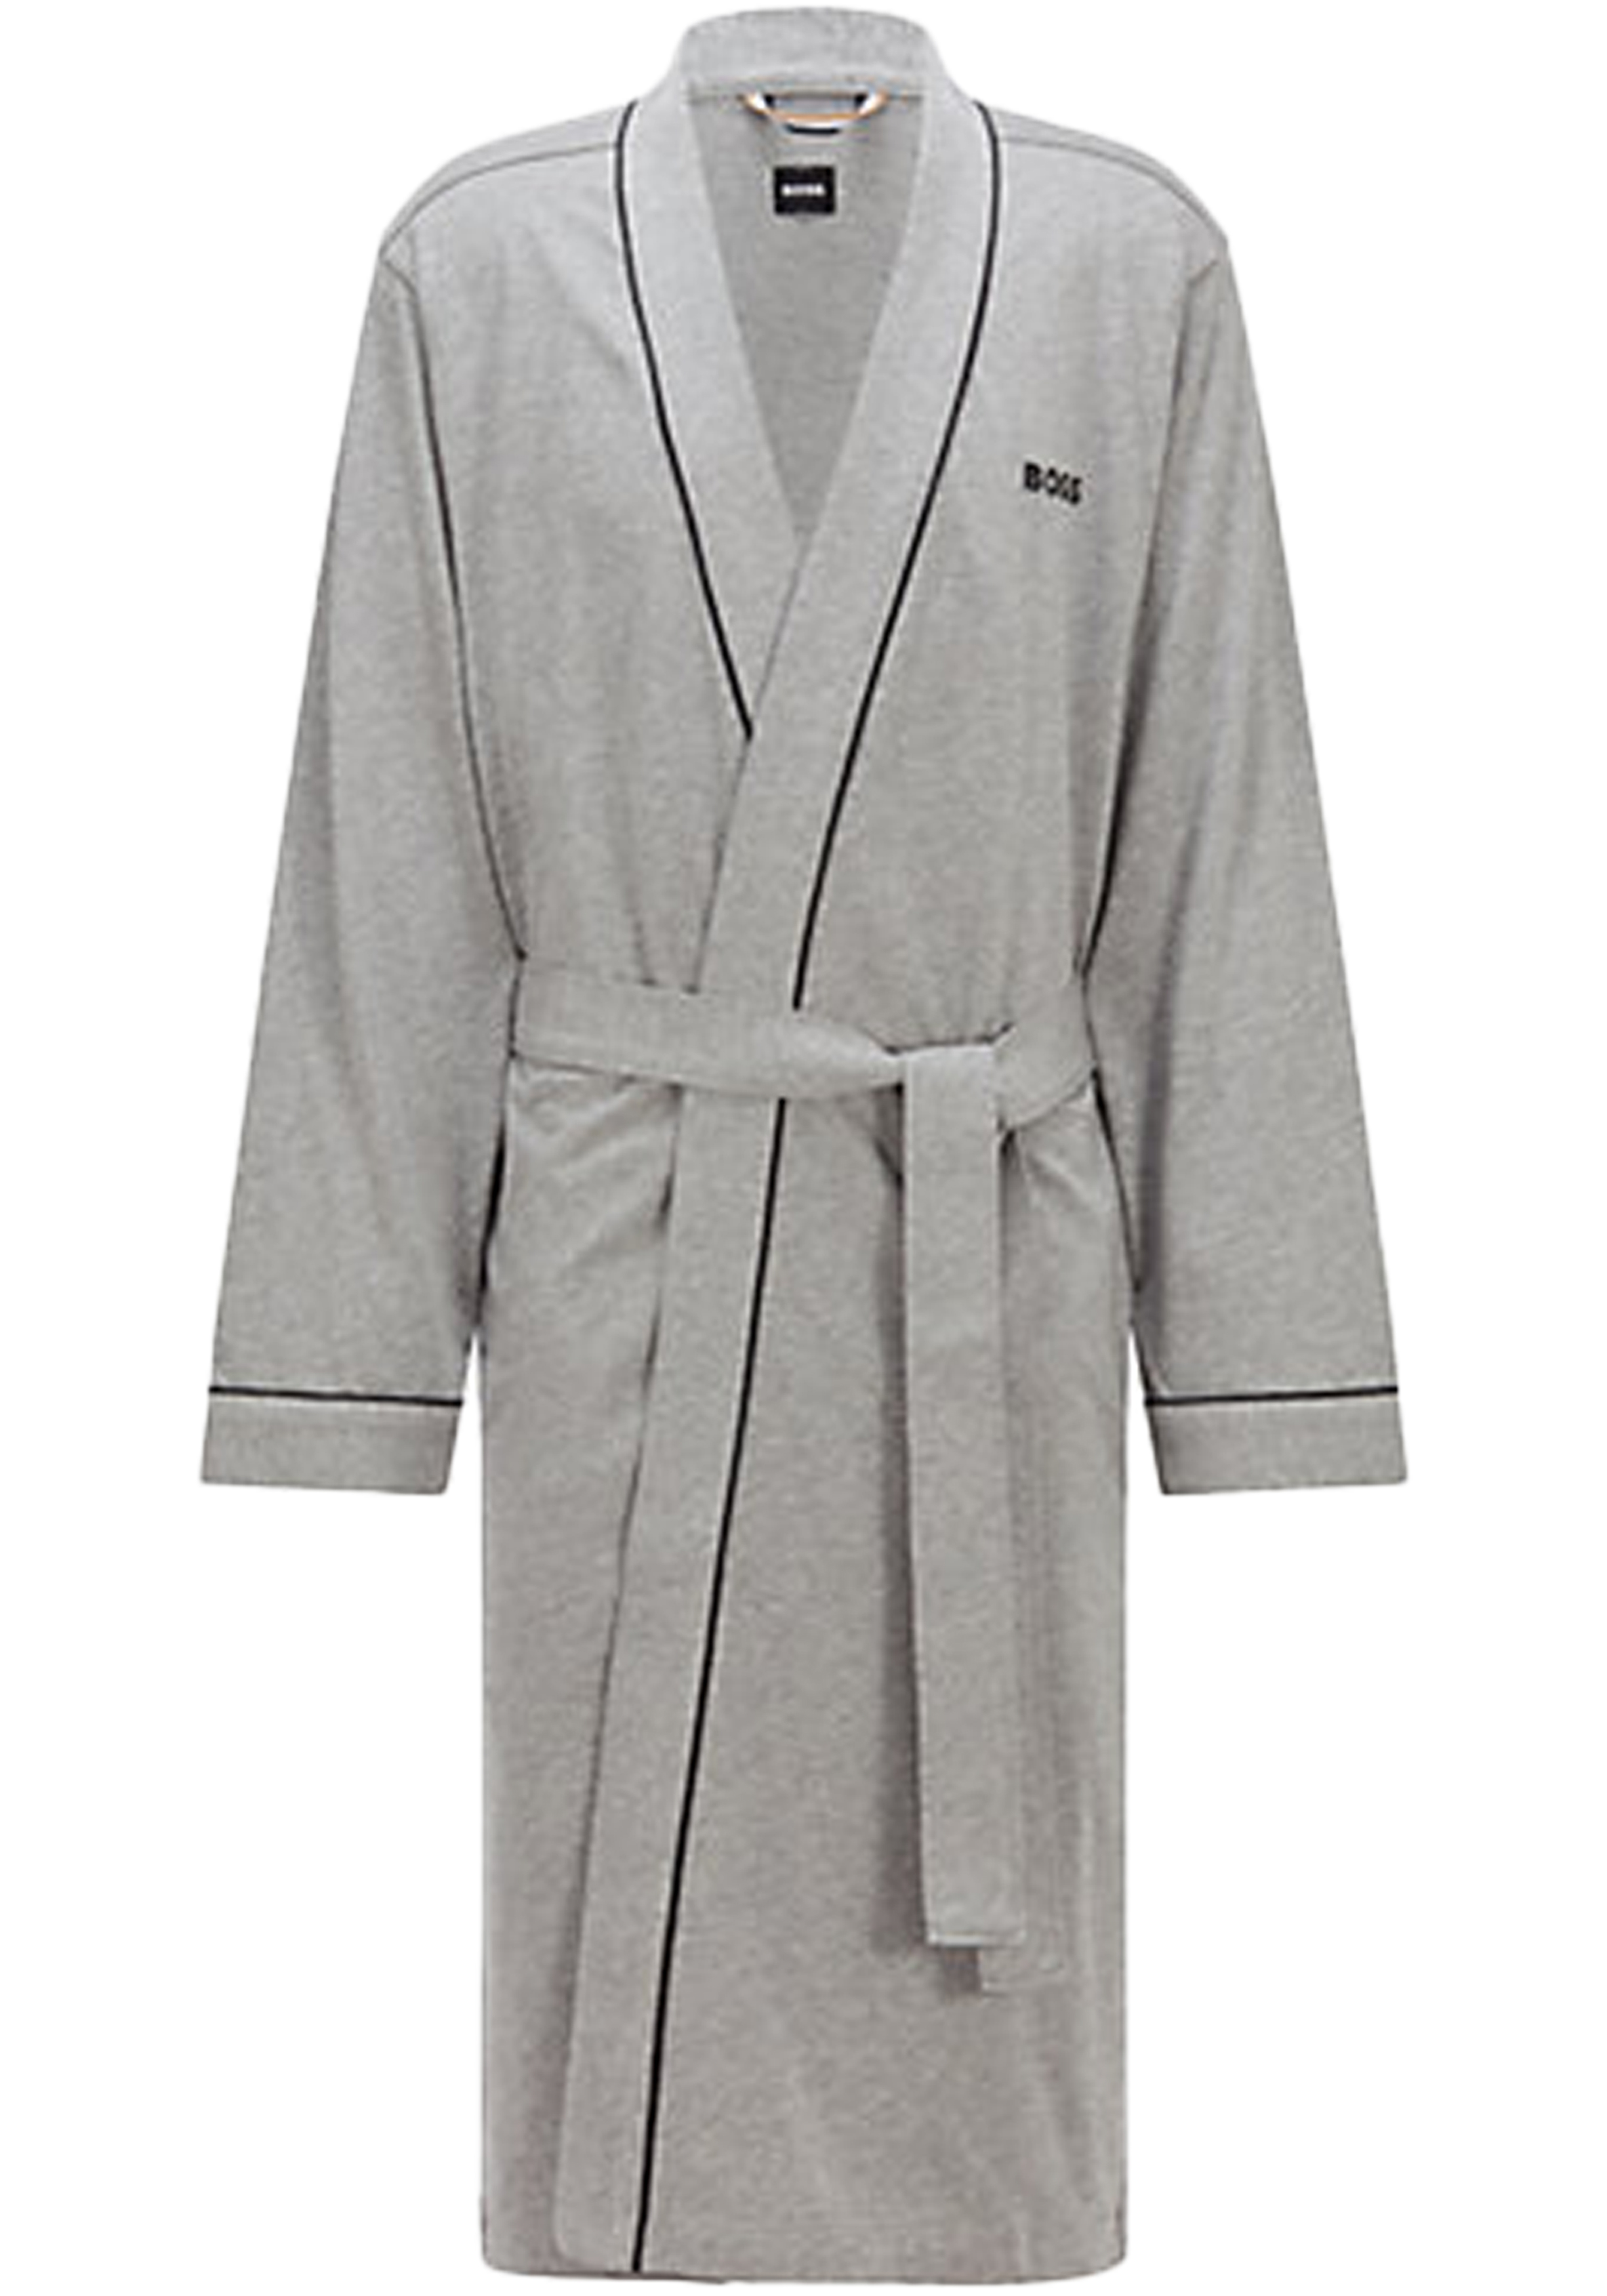 BOSS Kimono, heren ochtendjas (dun), middengrijs